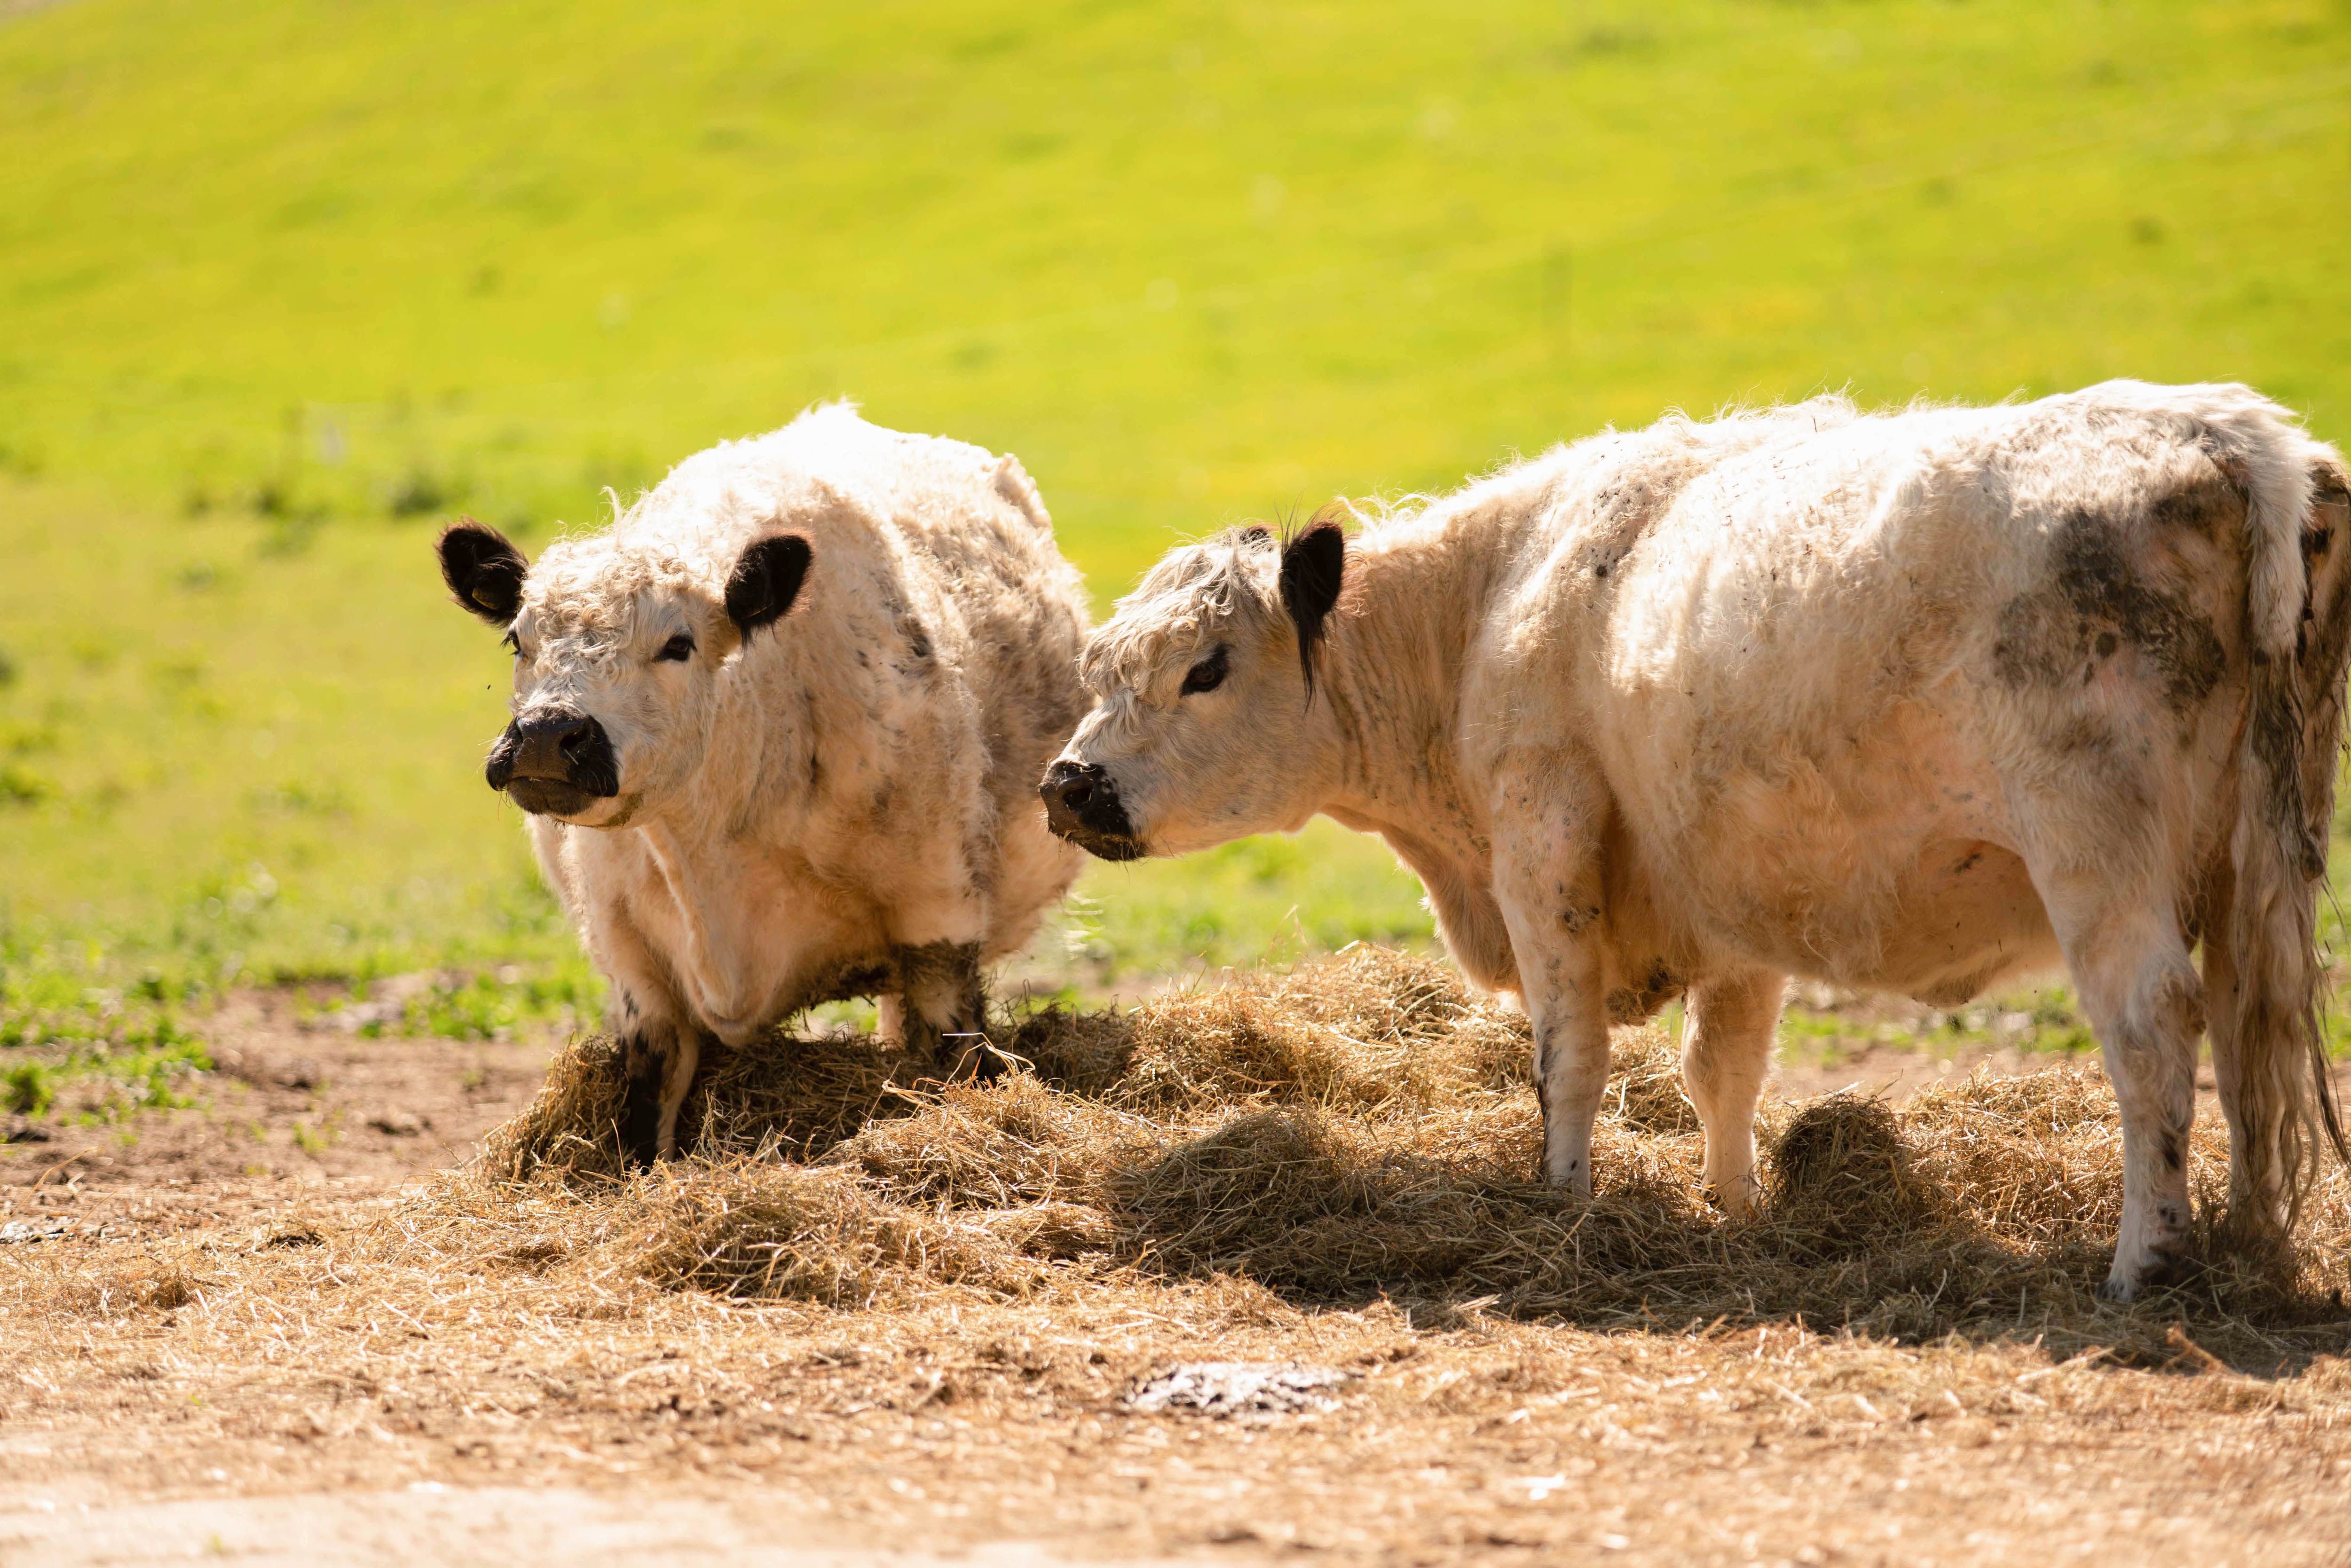 Galloway-Rinder vom Stolpener Landhof